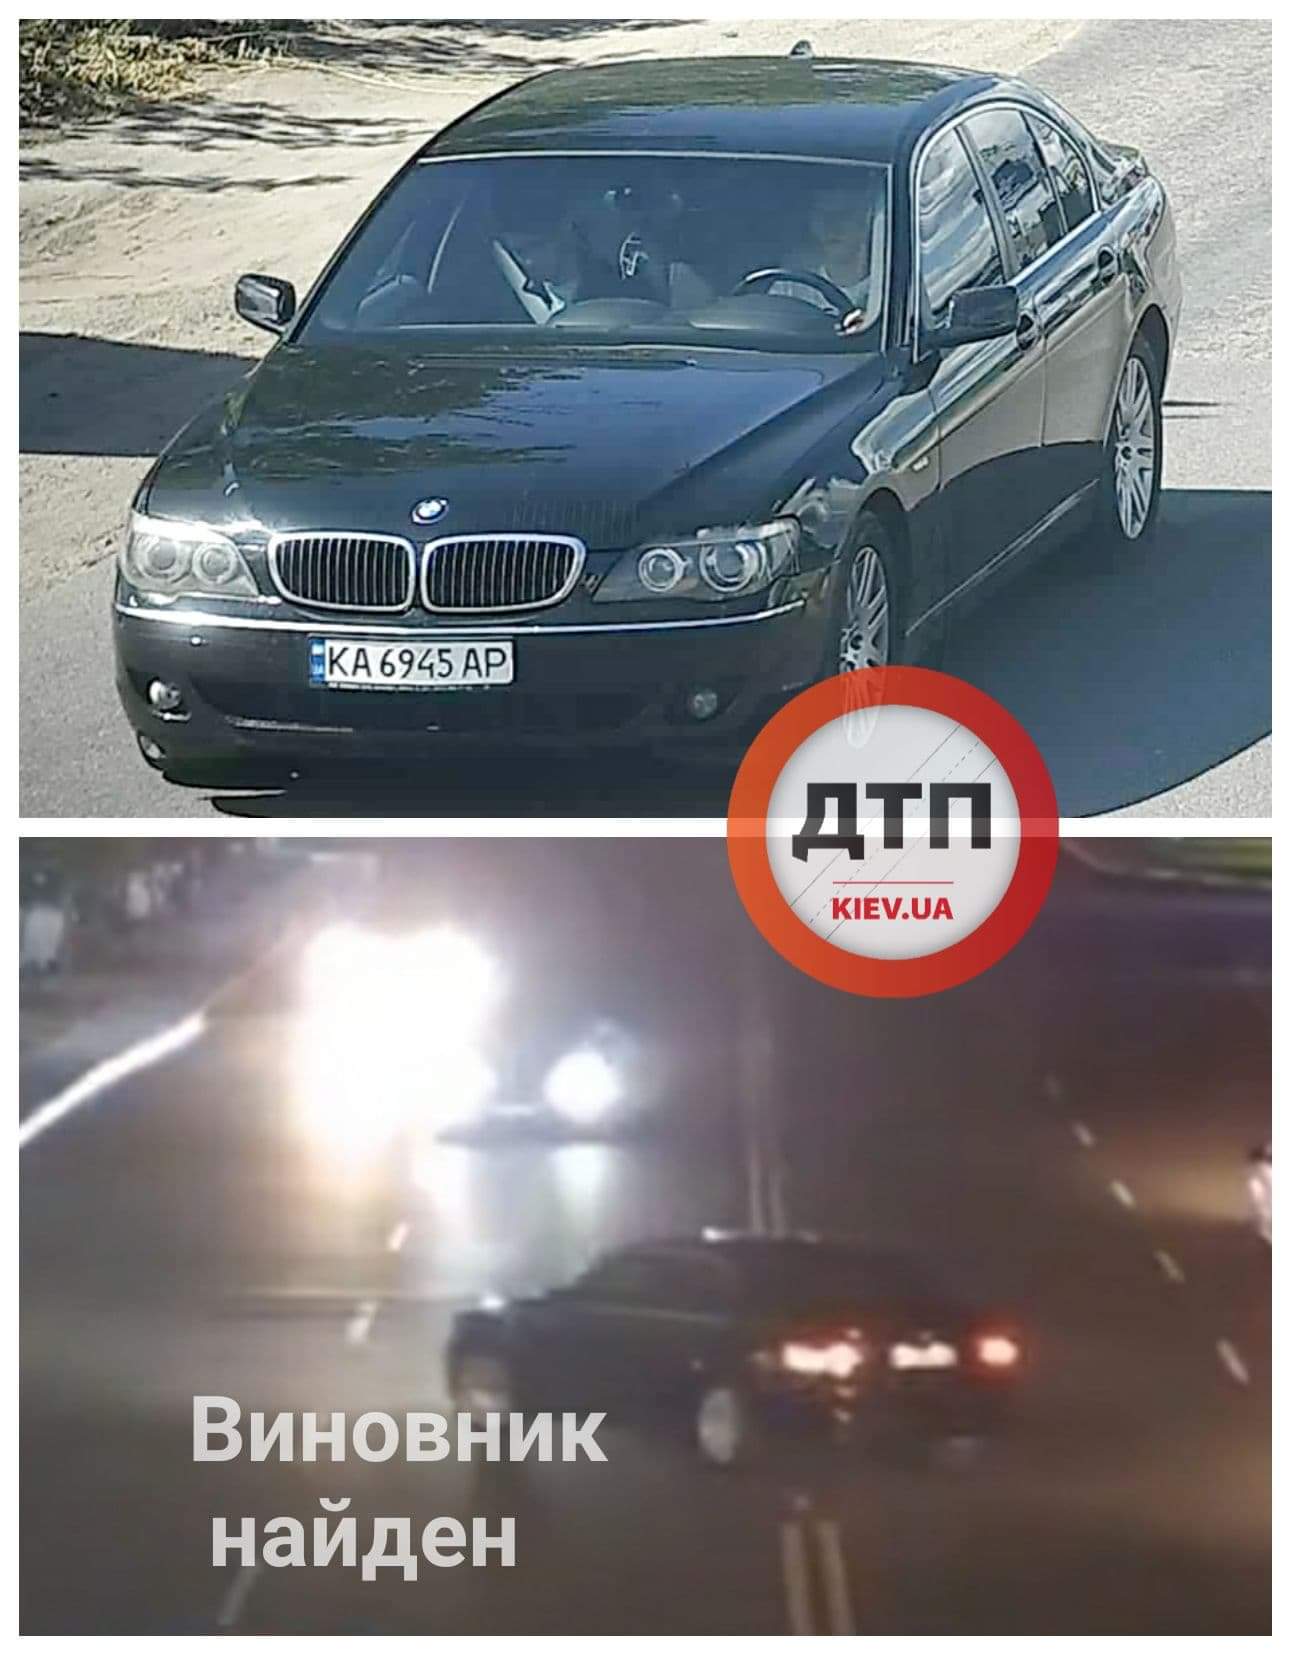 Полиция задержала виновника ДТП в Вишнёвом: водитель BMW повернул через двойную сплошную и подрезал встречный автомобиль, который врезался в отбойник